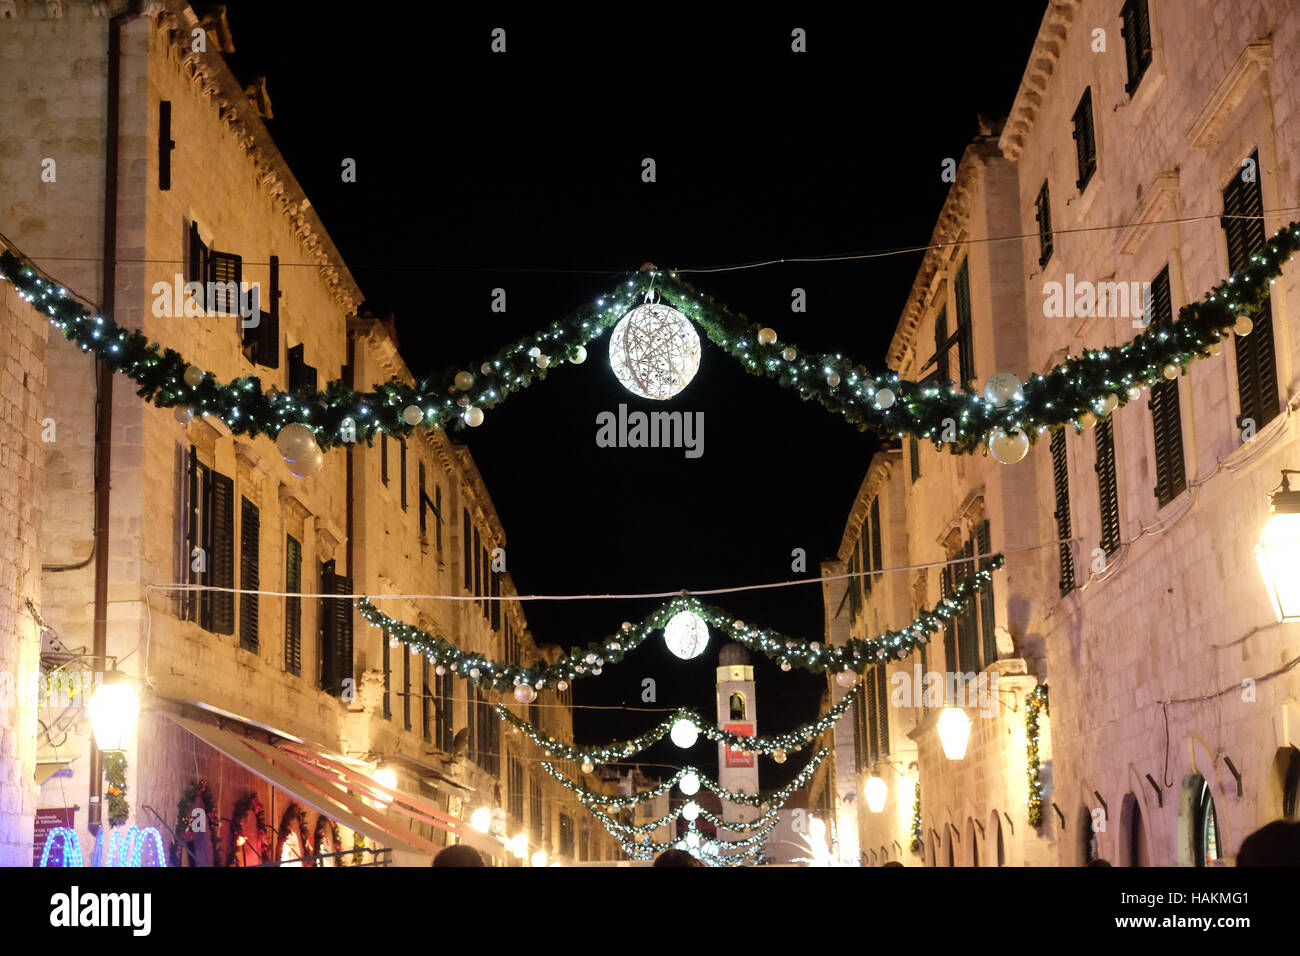 Stradun Straße dekoriert mit Weihnachtsbeleuchtung und Ornamente, glänzend in die romantische Atmosphäre, Dubrovnik, Kroatien Stockfoto